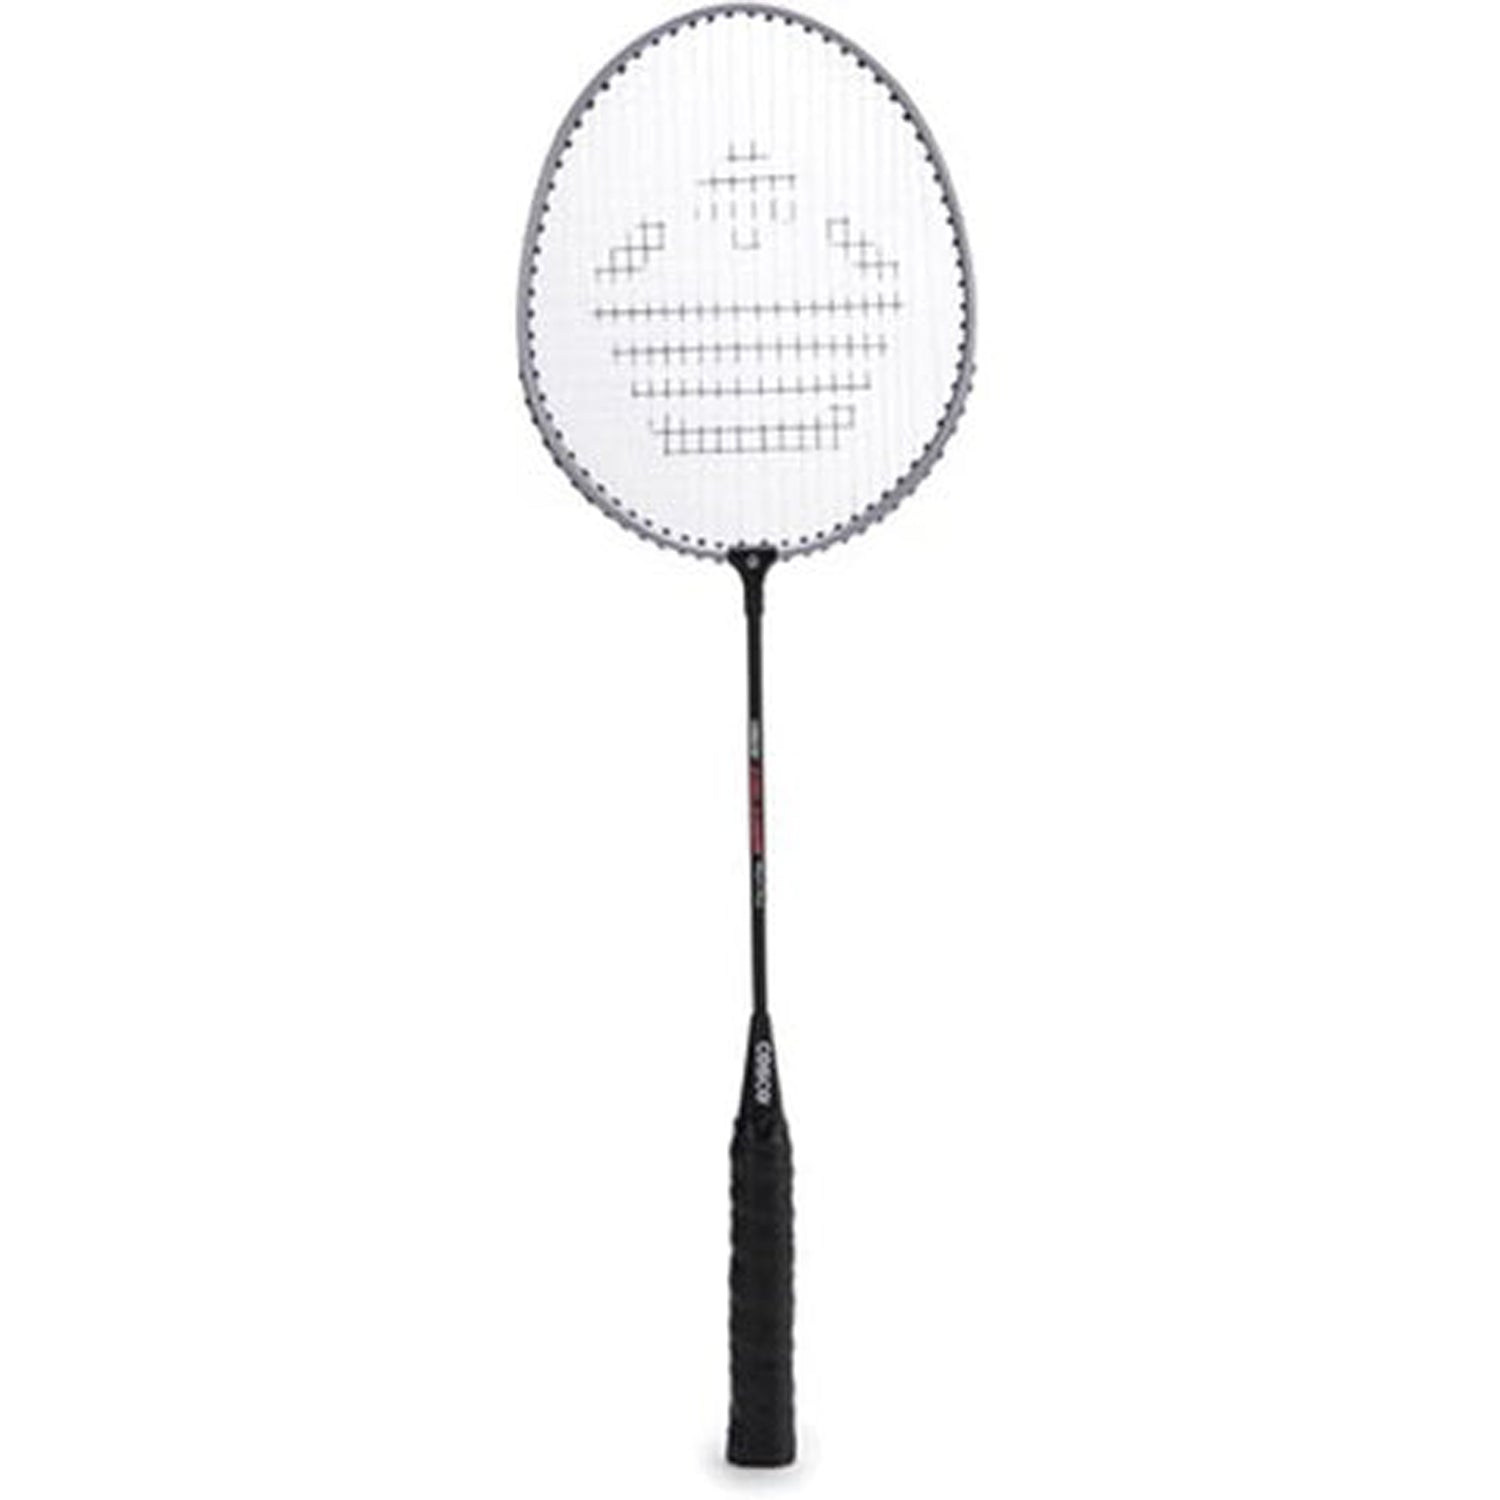 price of cosco badminton